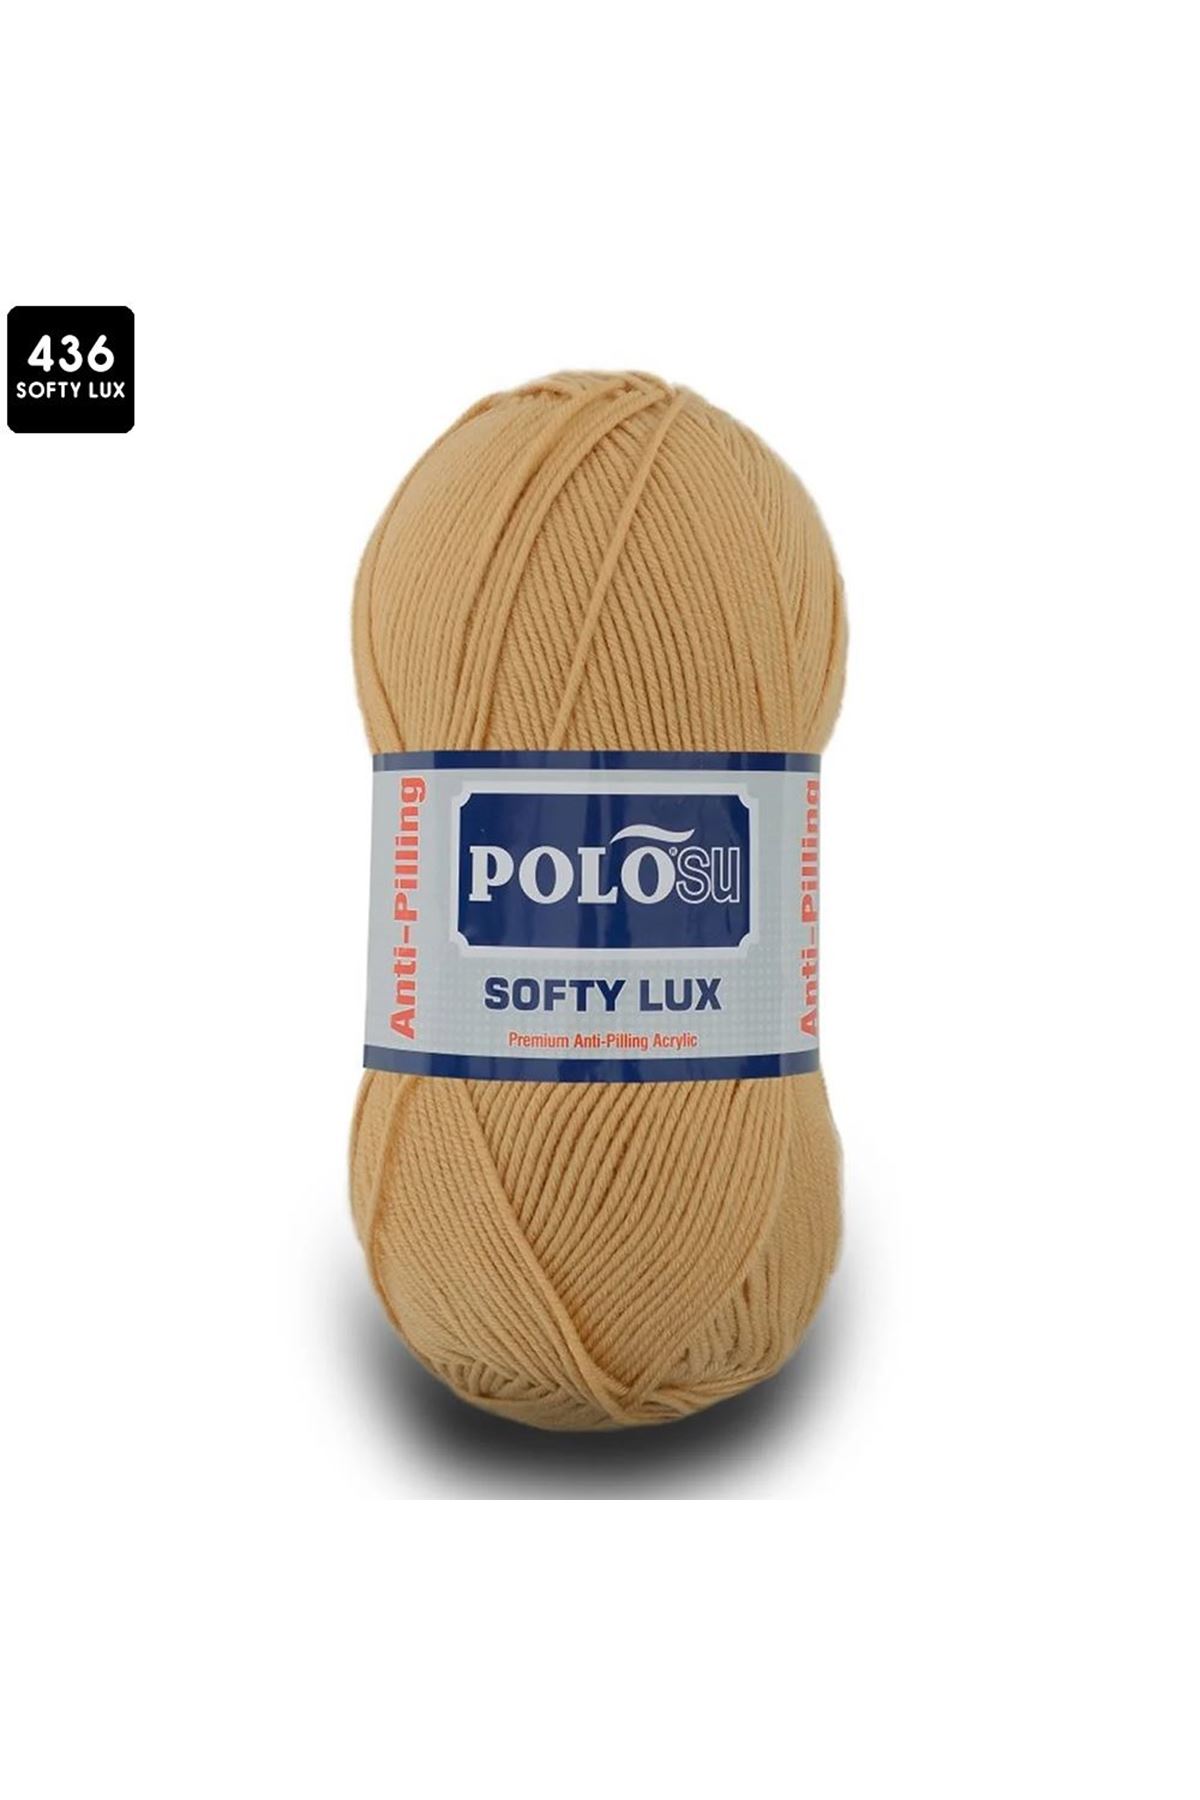 PoloSu Softy Lux Renk No:436